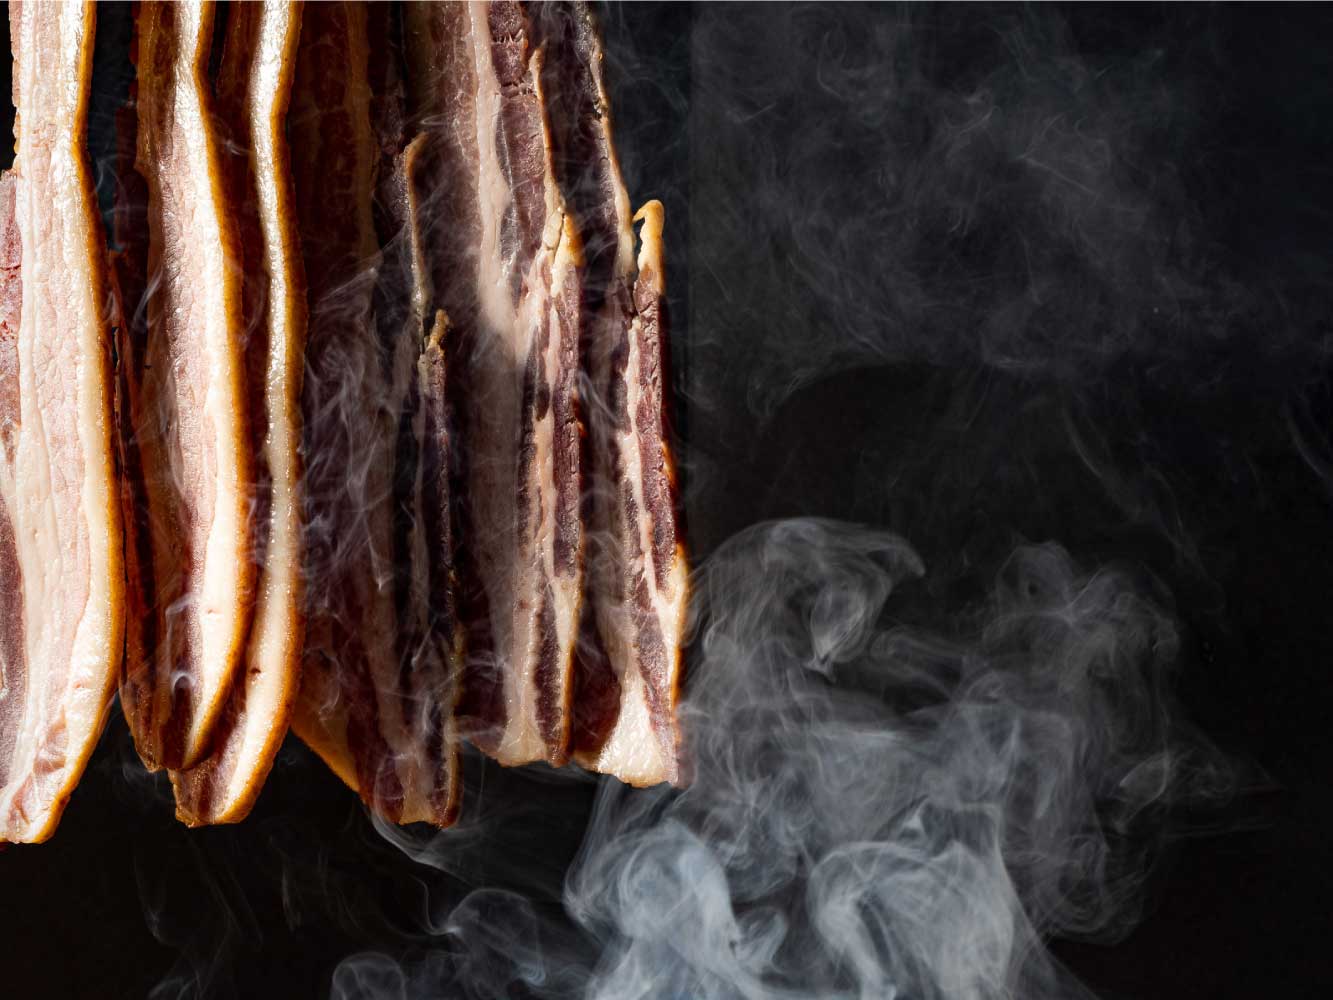 Smokey Benton's Bacon